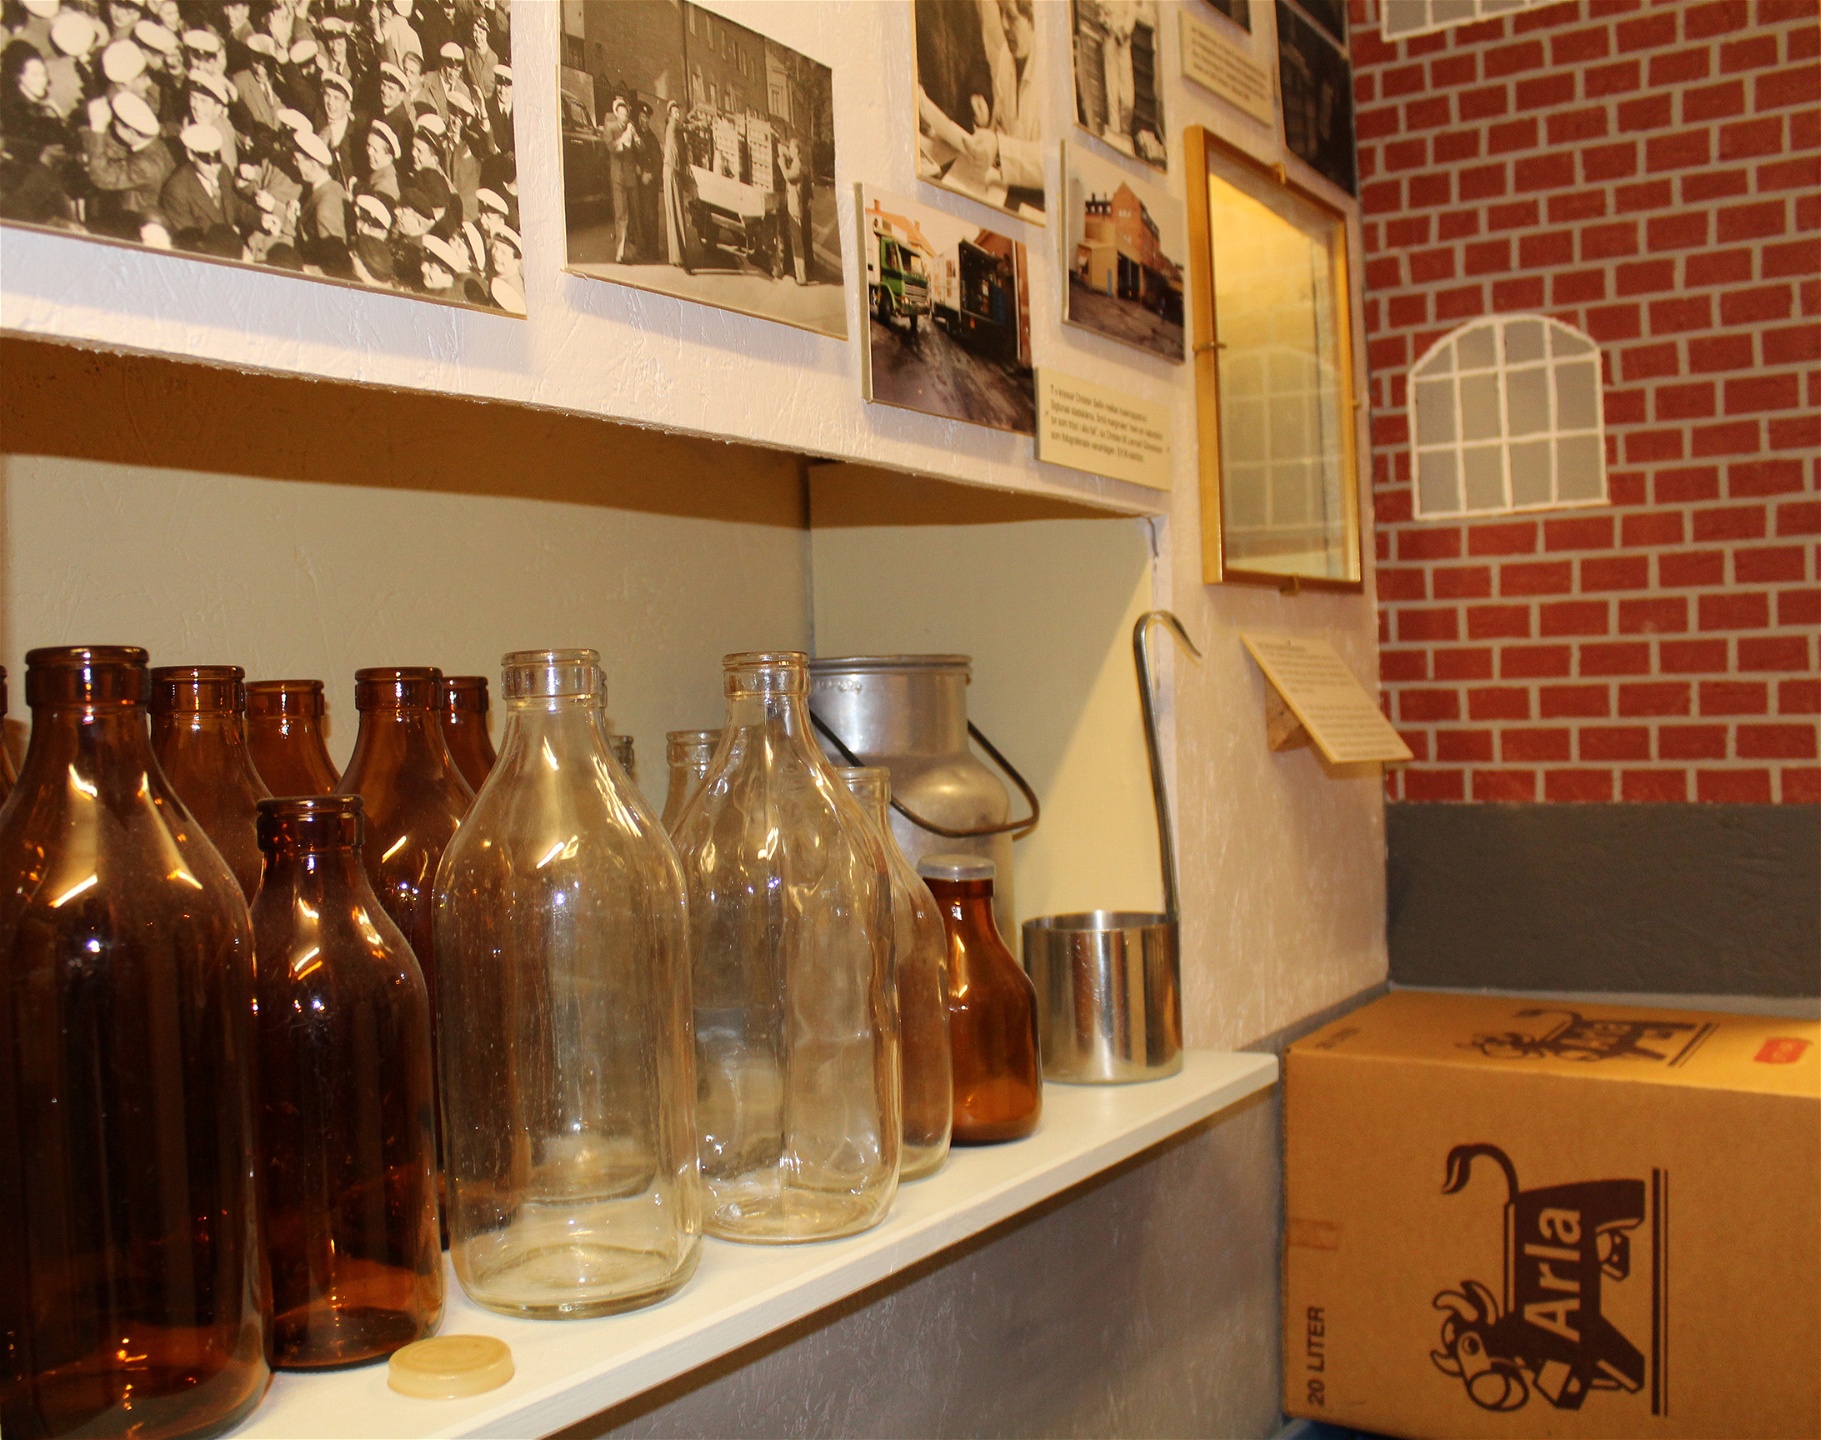 Mjölkförpackningar genom tiderna från Arla är ett av utställningsobjekten på museet.